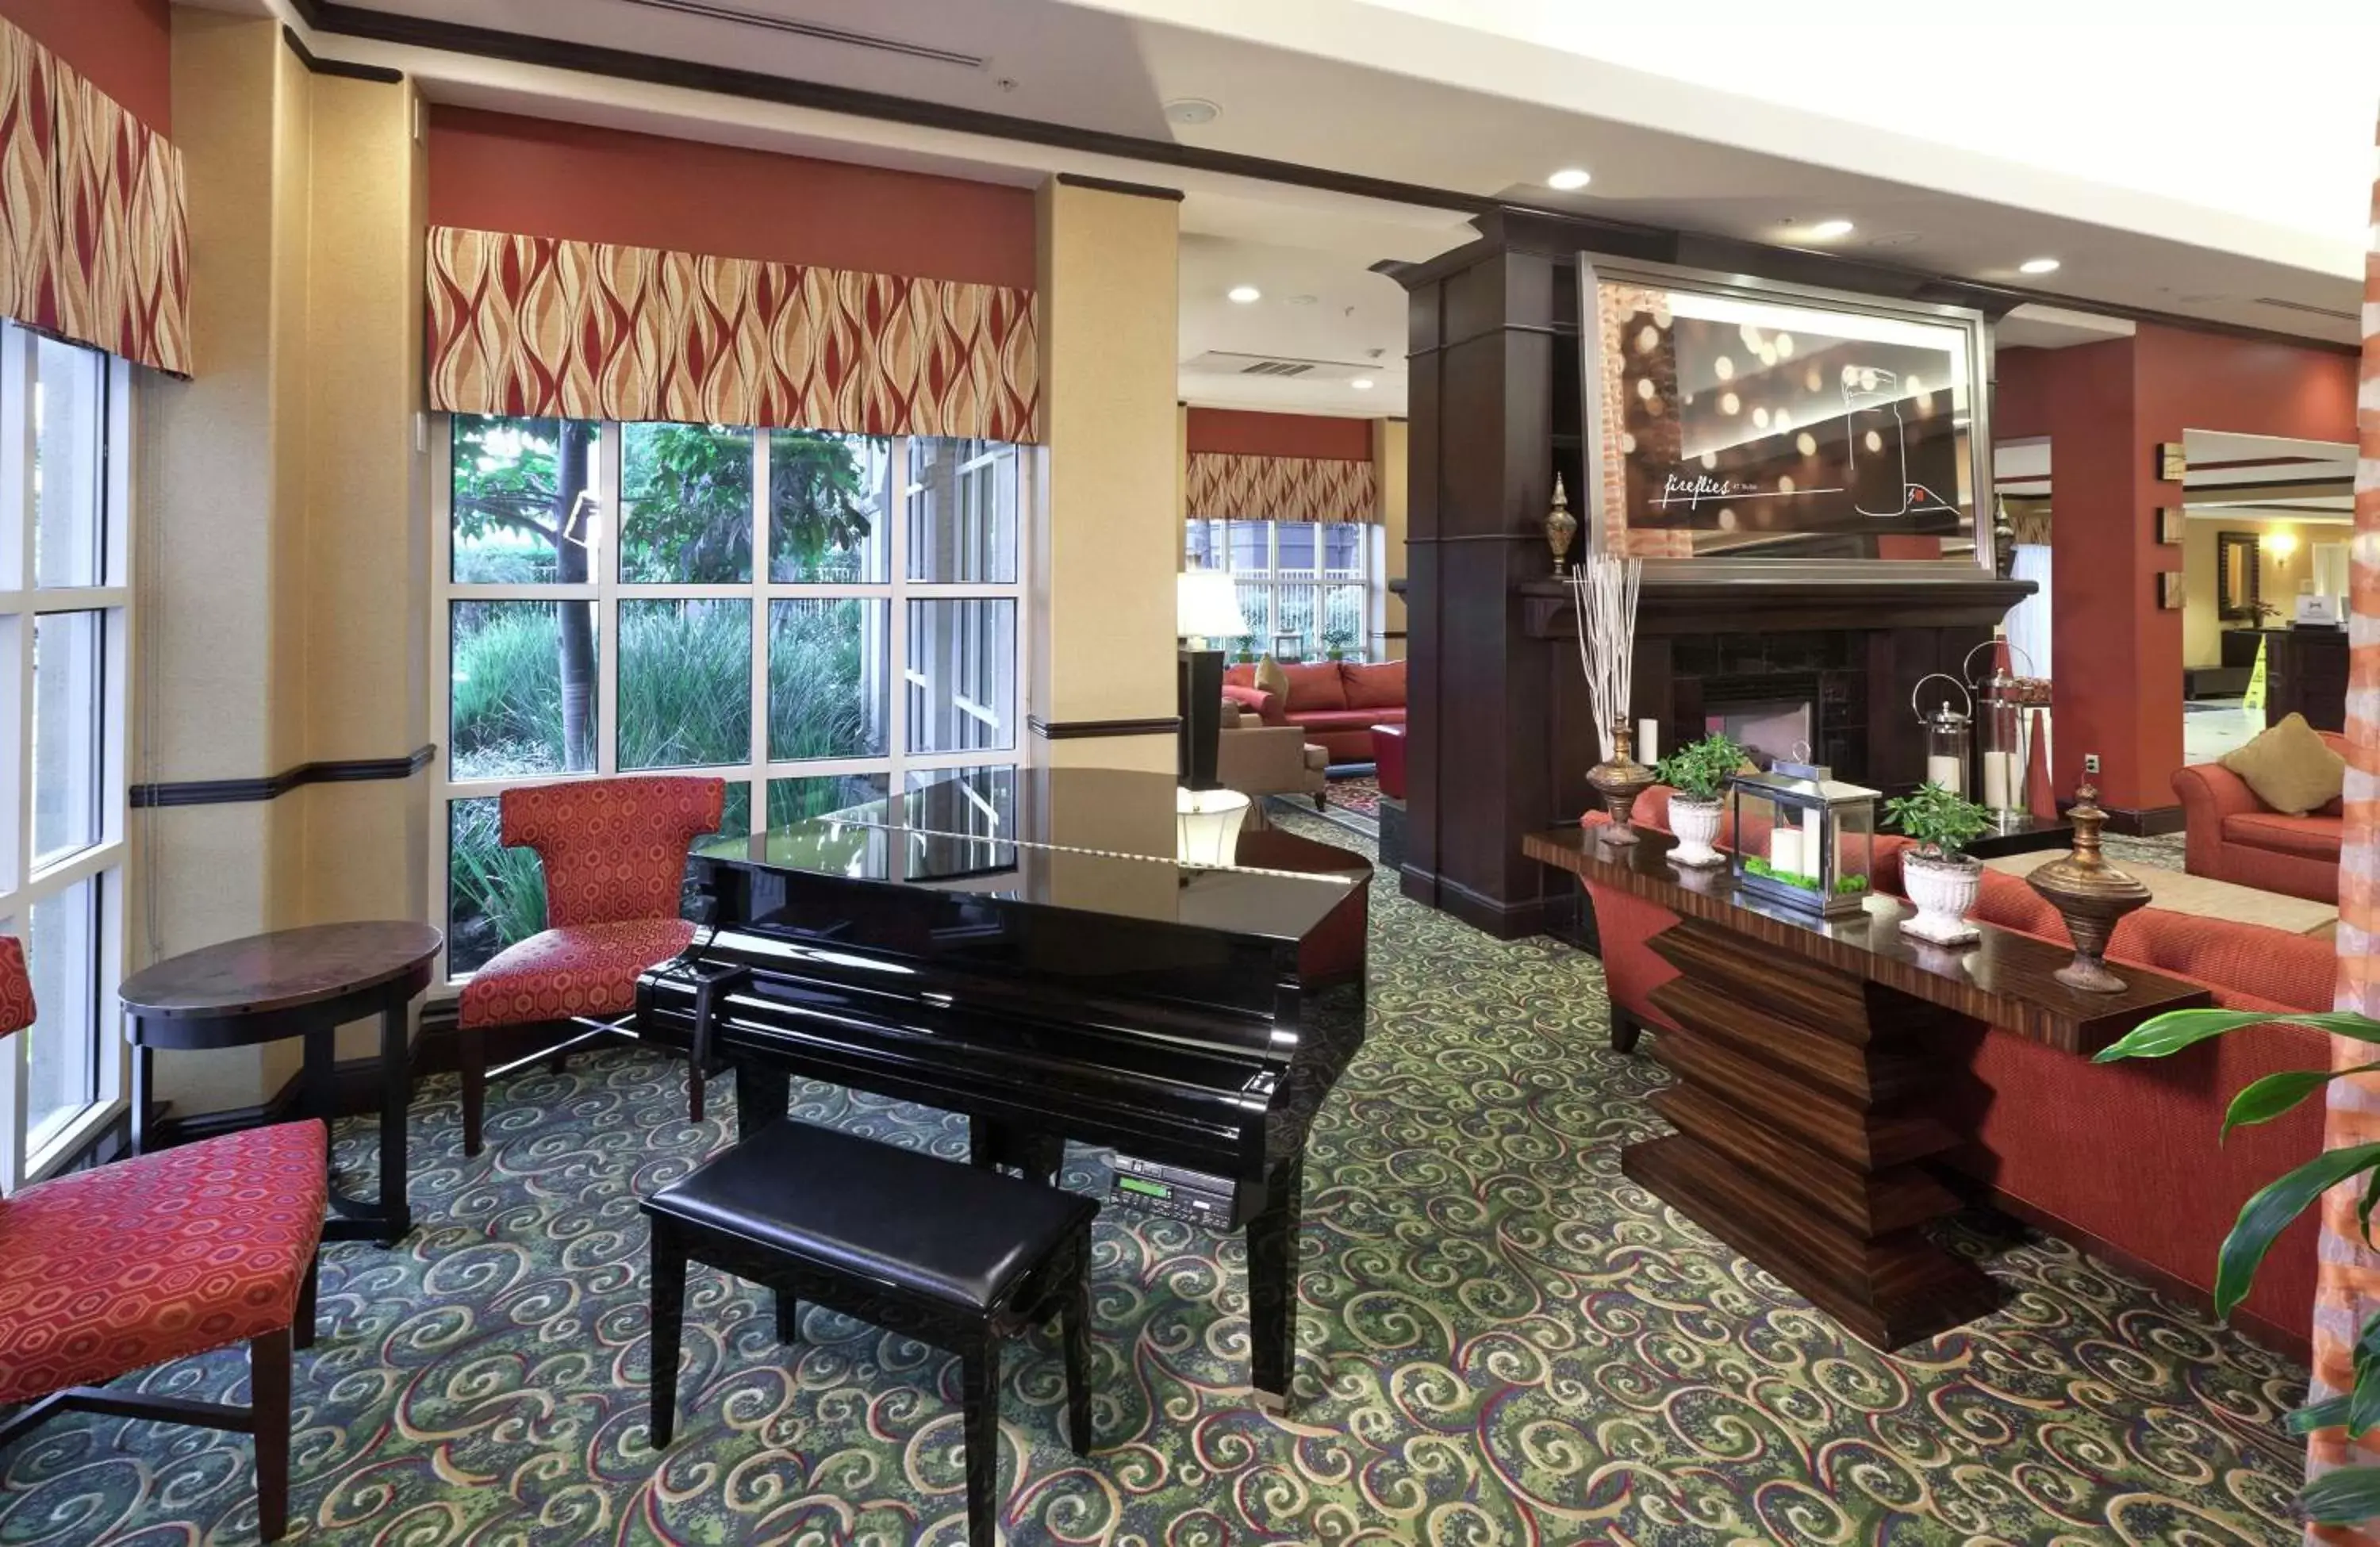 Lobby or reception in Hilton Garden Inn Fontana